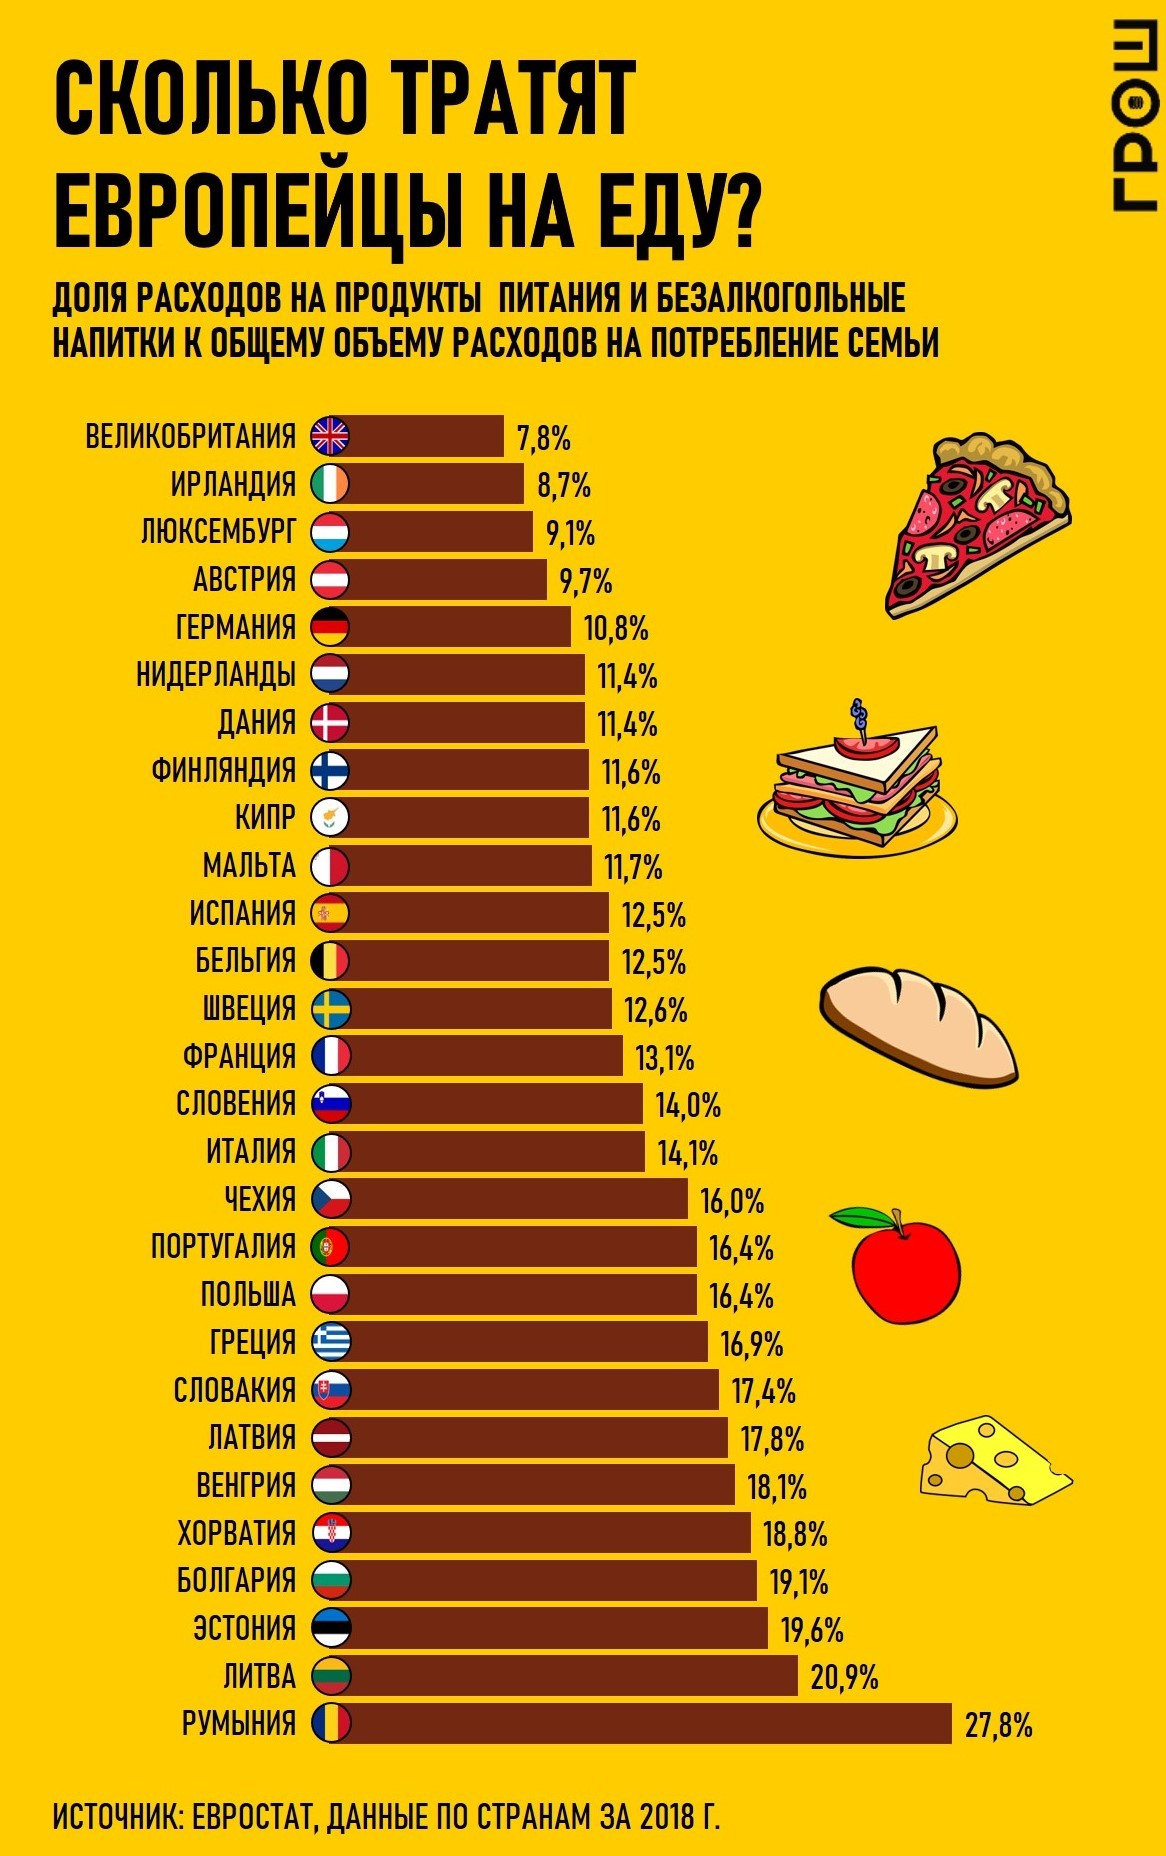 Инфографика: сколько тратят на еду в Европе? | Пикабу